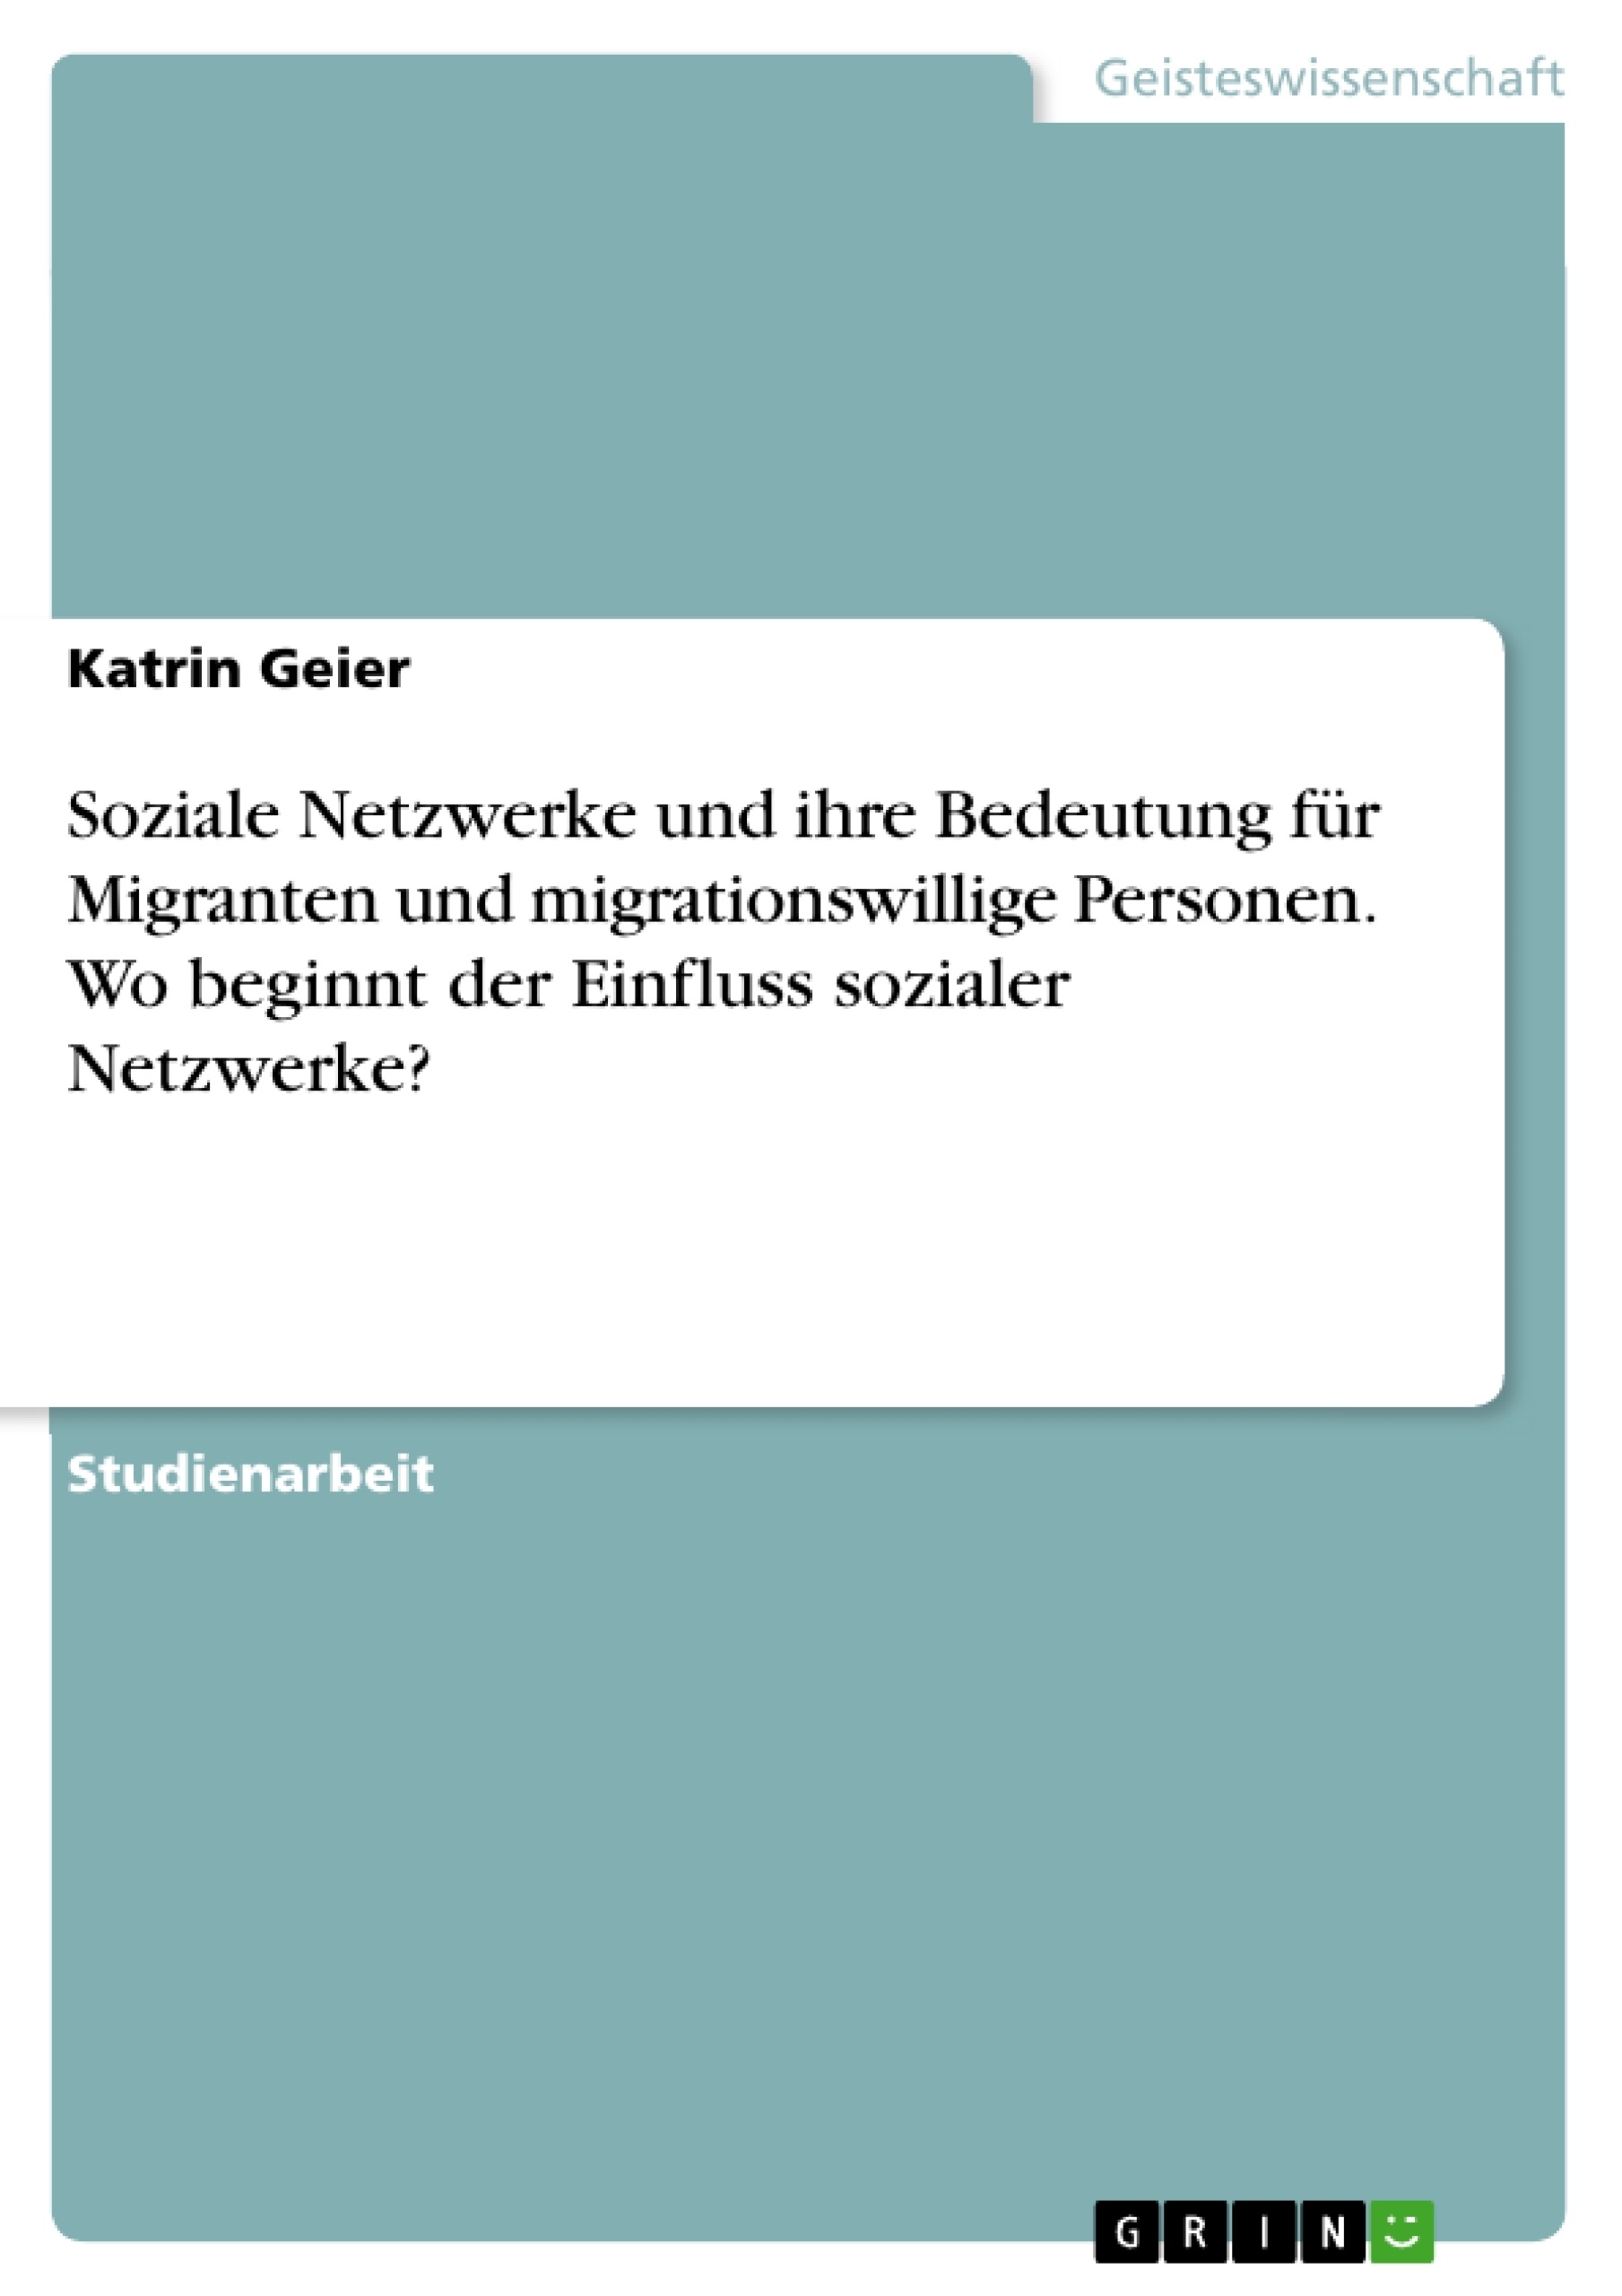 Titre: Soziale Netzwerke und ihre Bedeutung für Migranten und migrationswillige Personen. Wo beginnt der Einfluss sozialer Netzwerke?